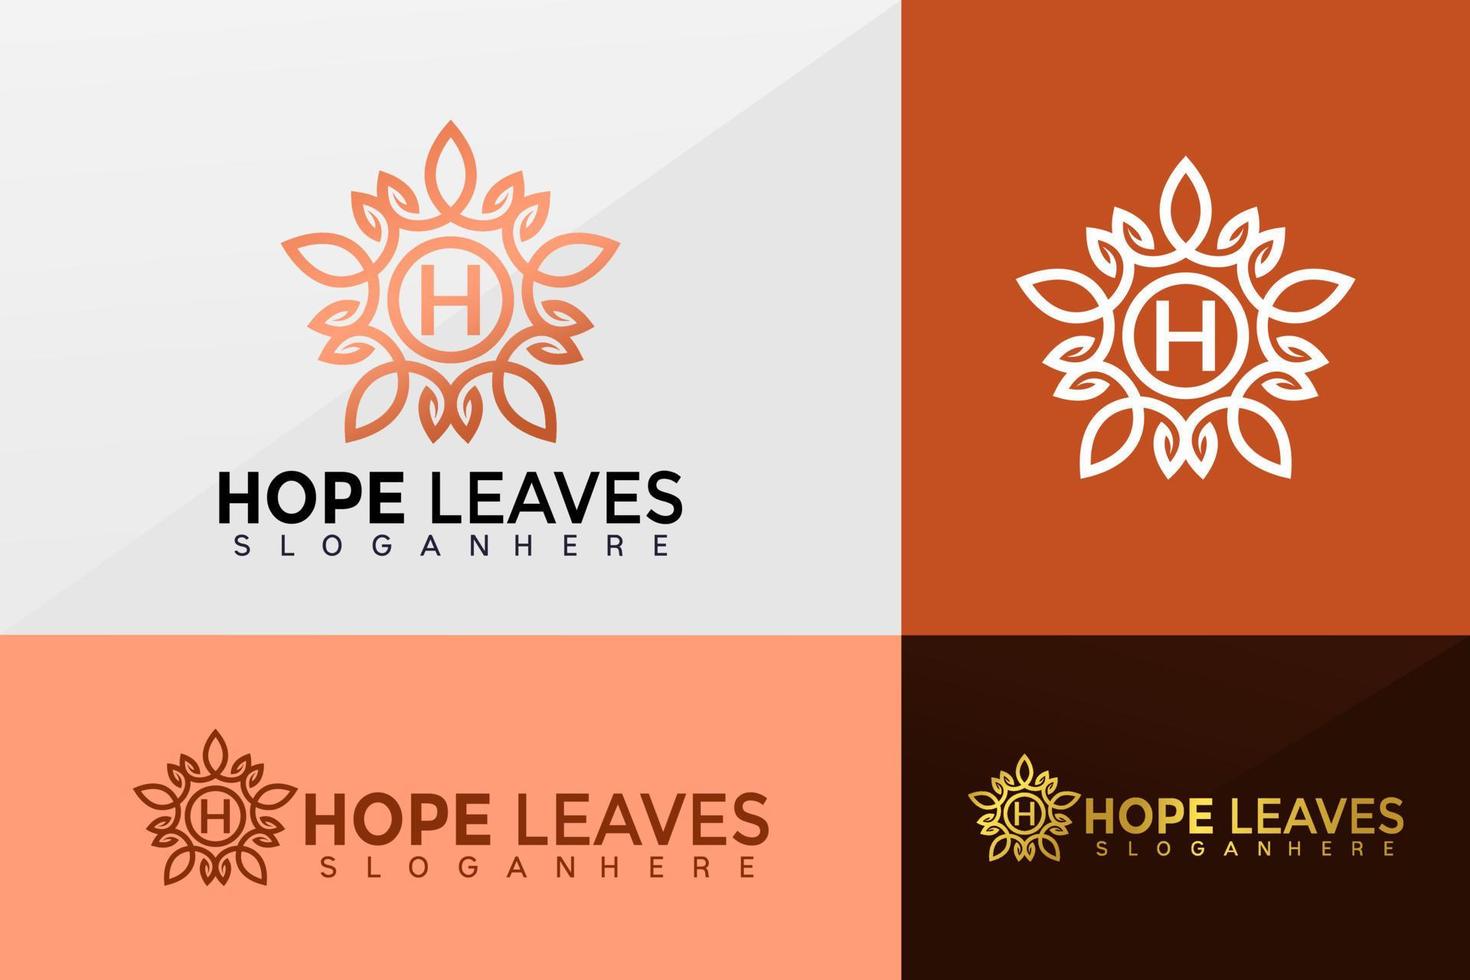 Beauty Flower Leaf logo vector, Boutique Leaf Logos design, modern logo, Logo Designs Vector Illustration Template